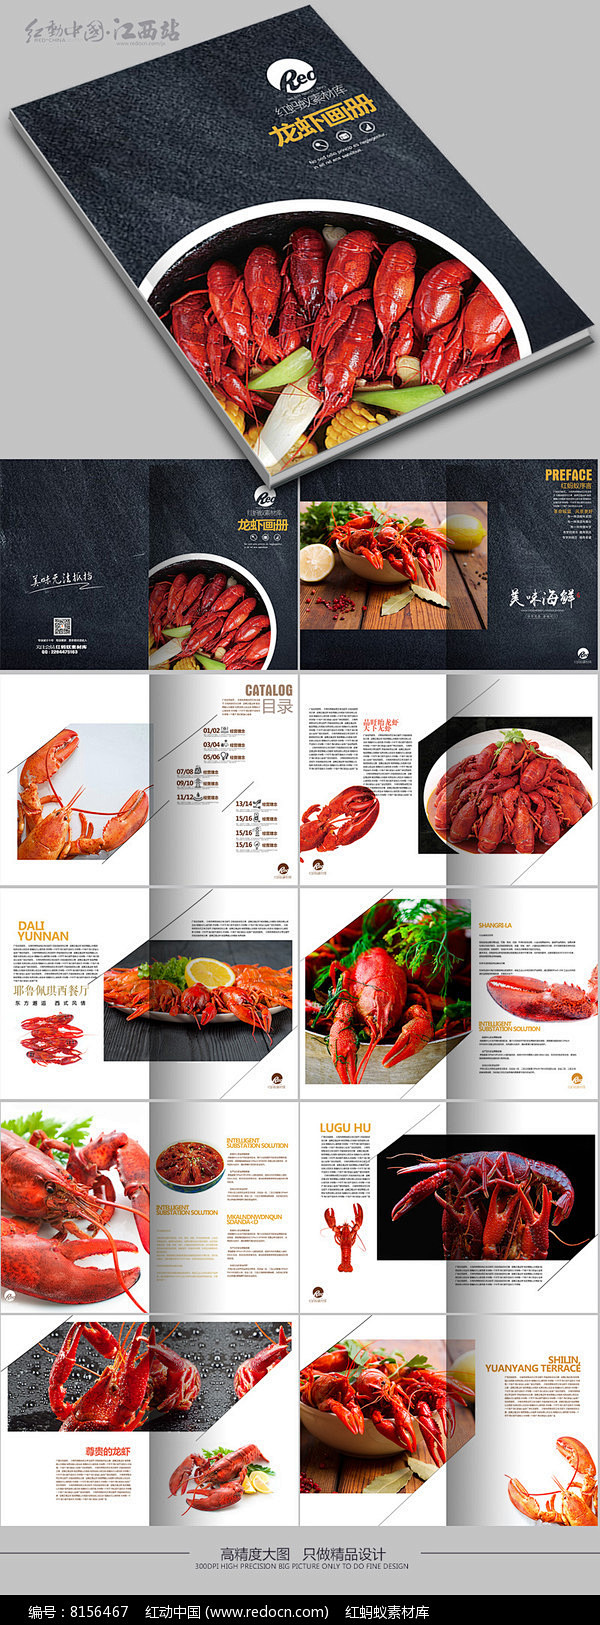 龙虾美食画册图片 海鲜食品画册 餐厅画册...